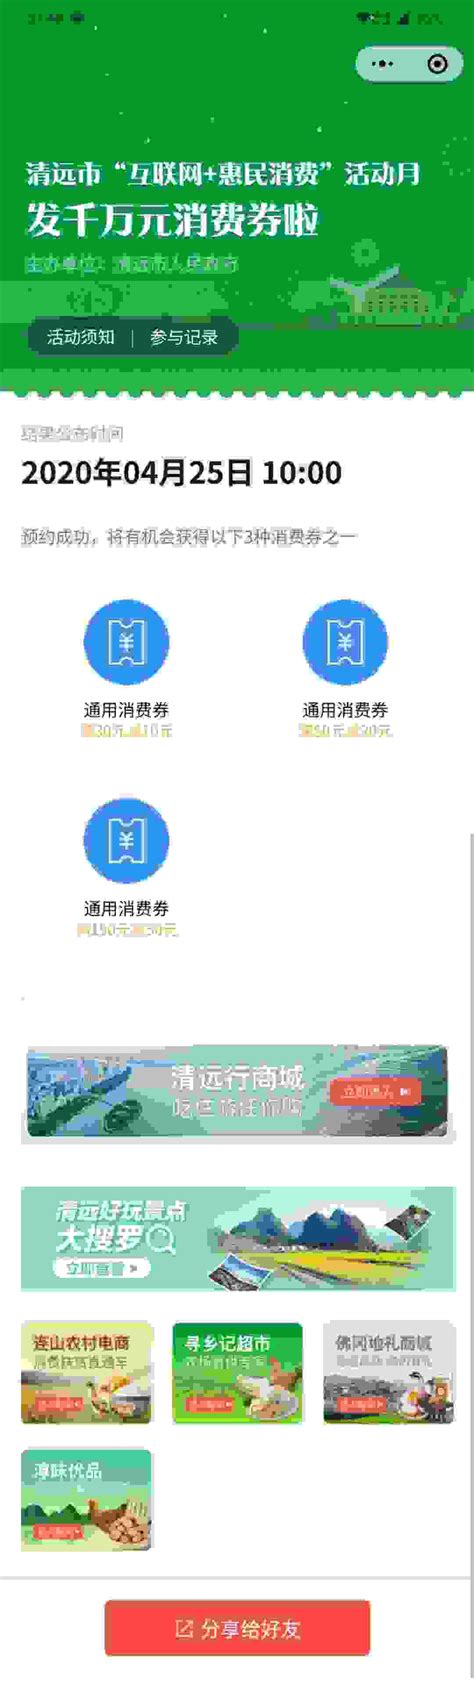 广东清远启动2000万元消费券发放活动，面向微信支付商家开放接入- 南方企业新闻网